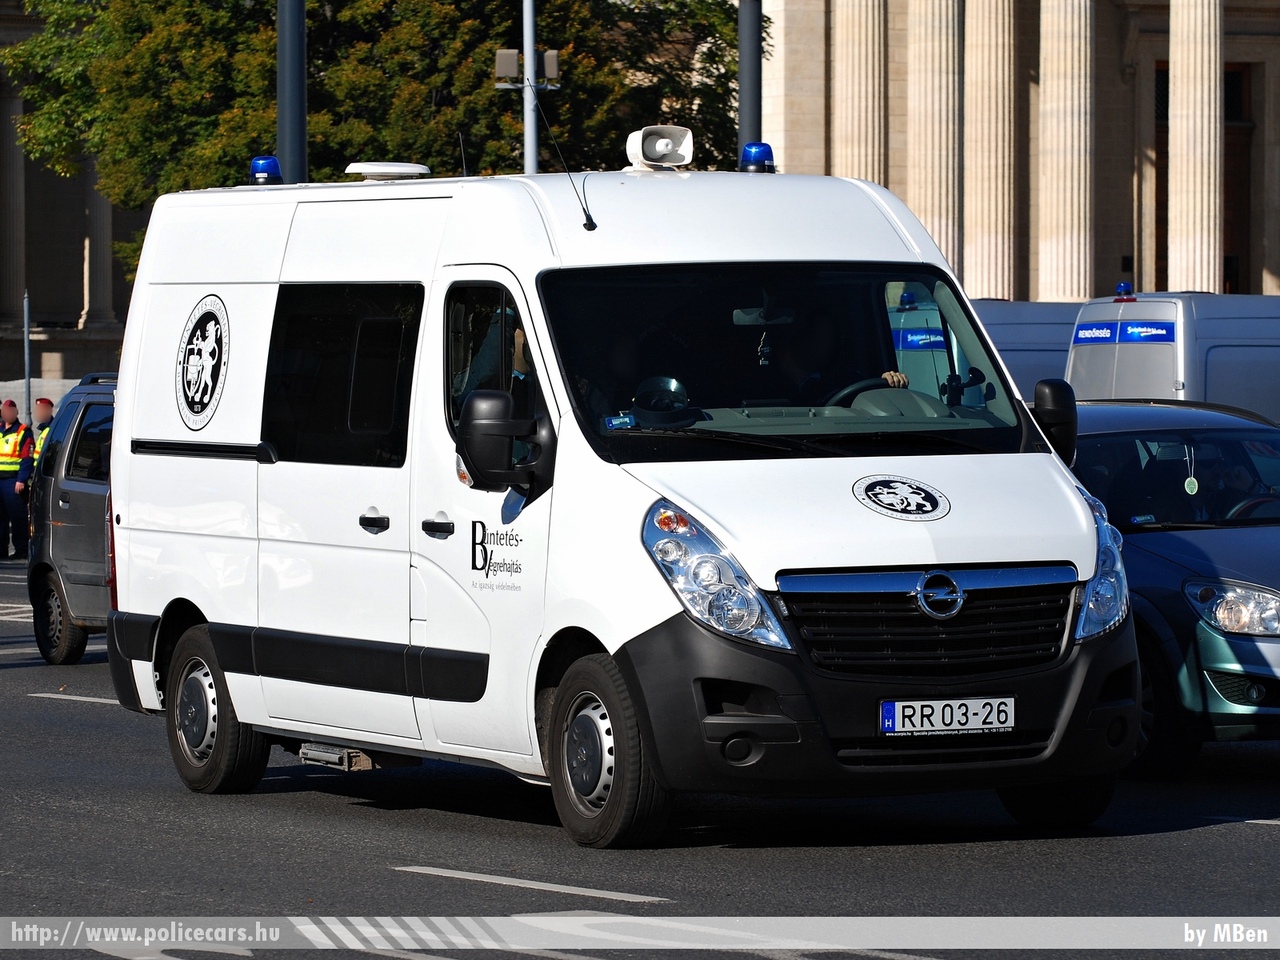 Opel Movano, Országos Büntetés-végrehajtási Intézet, fotó: MBen
Keywords: BV RR03-26 BV magyar Magyarország Hungary hungarian prison  Büntetés-végrehajtás